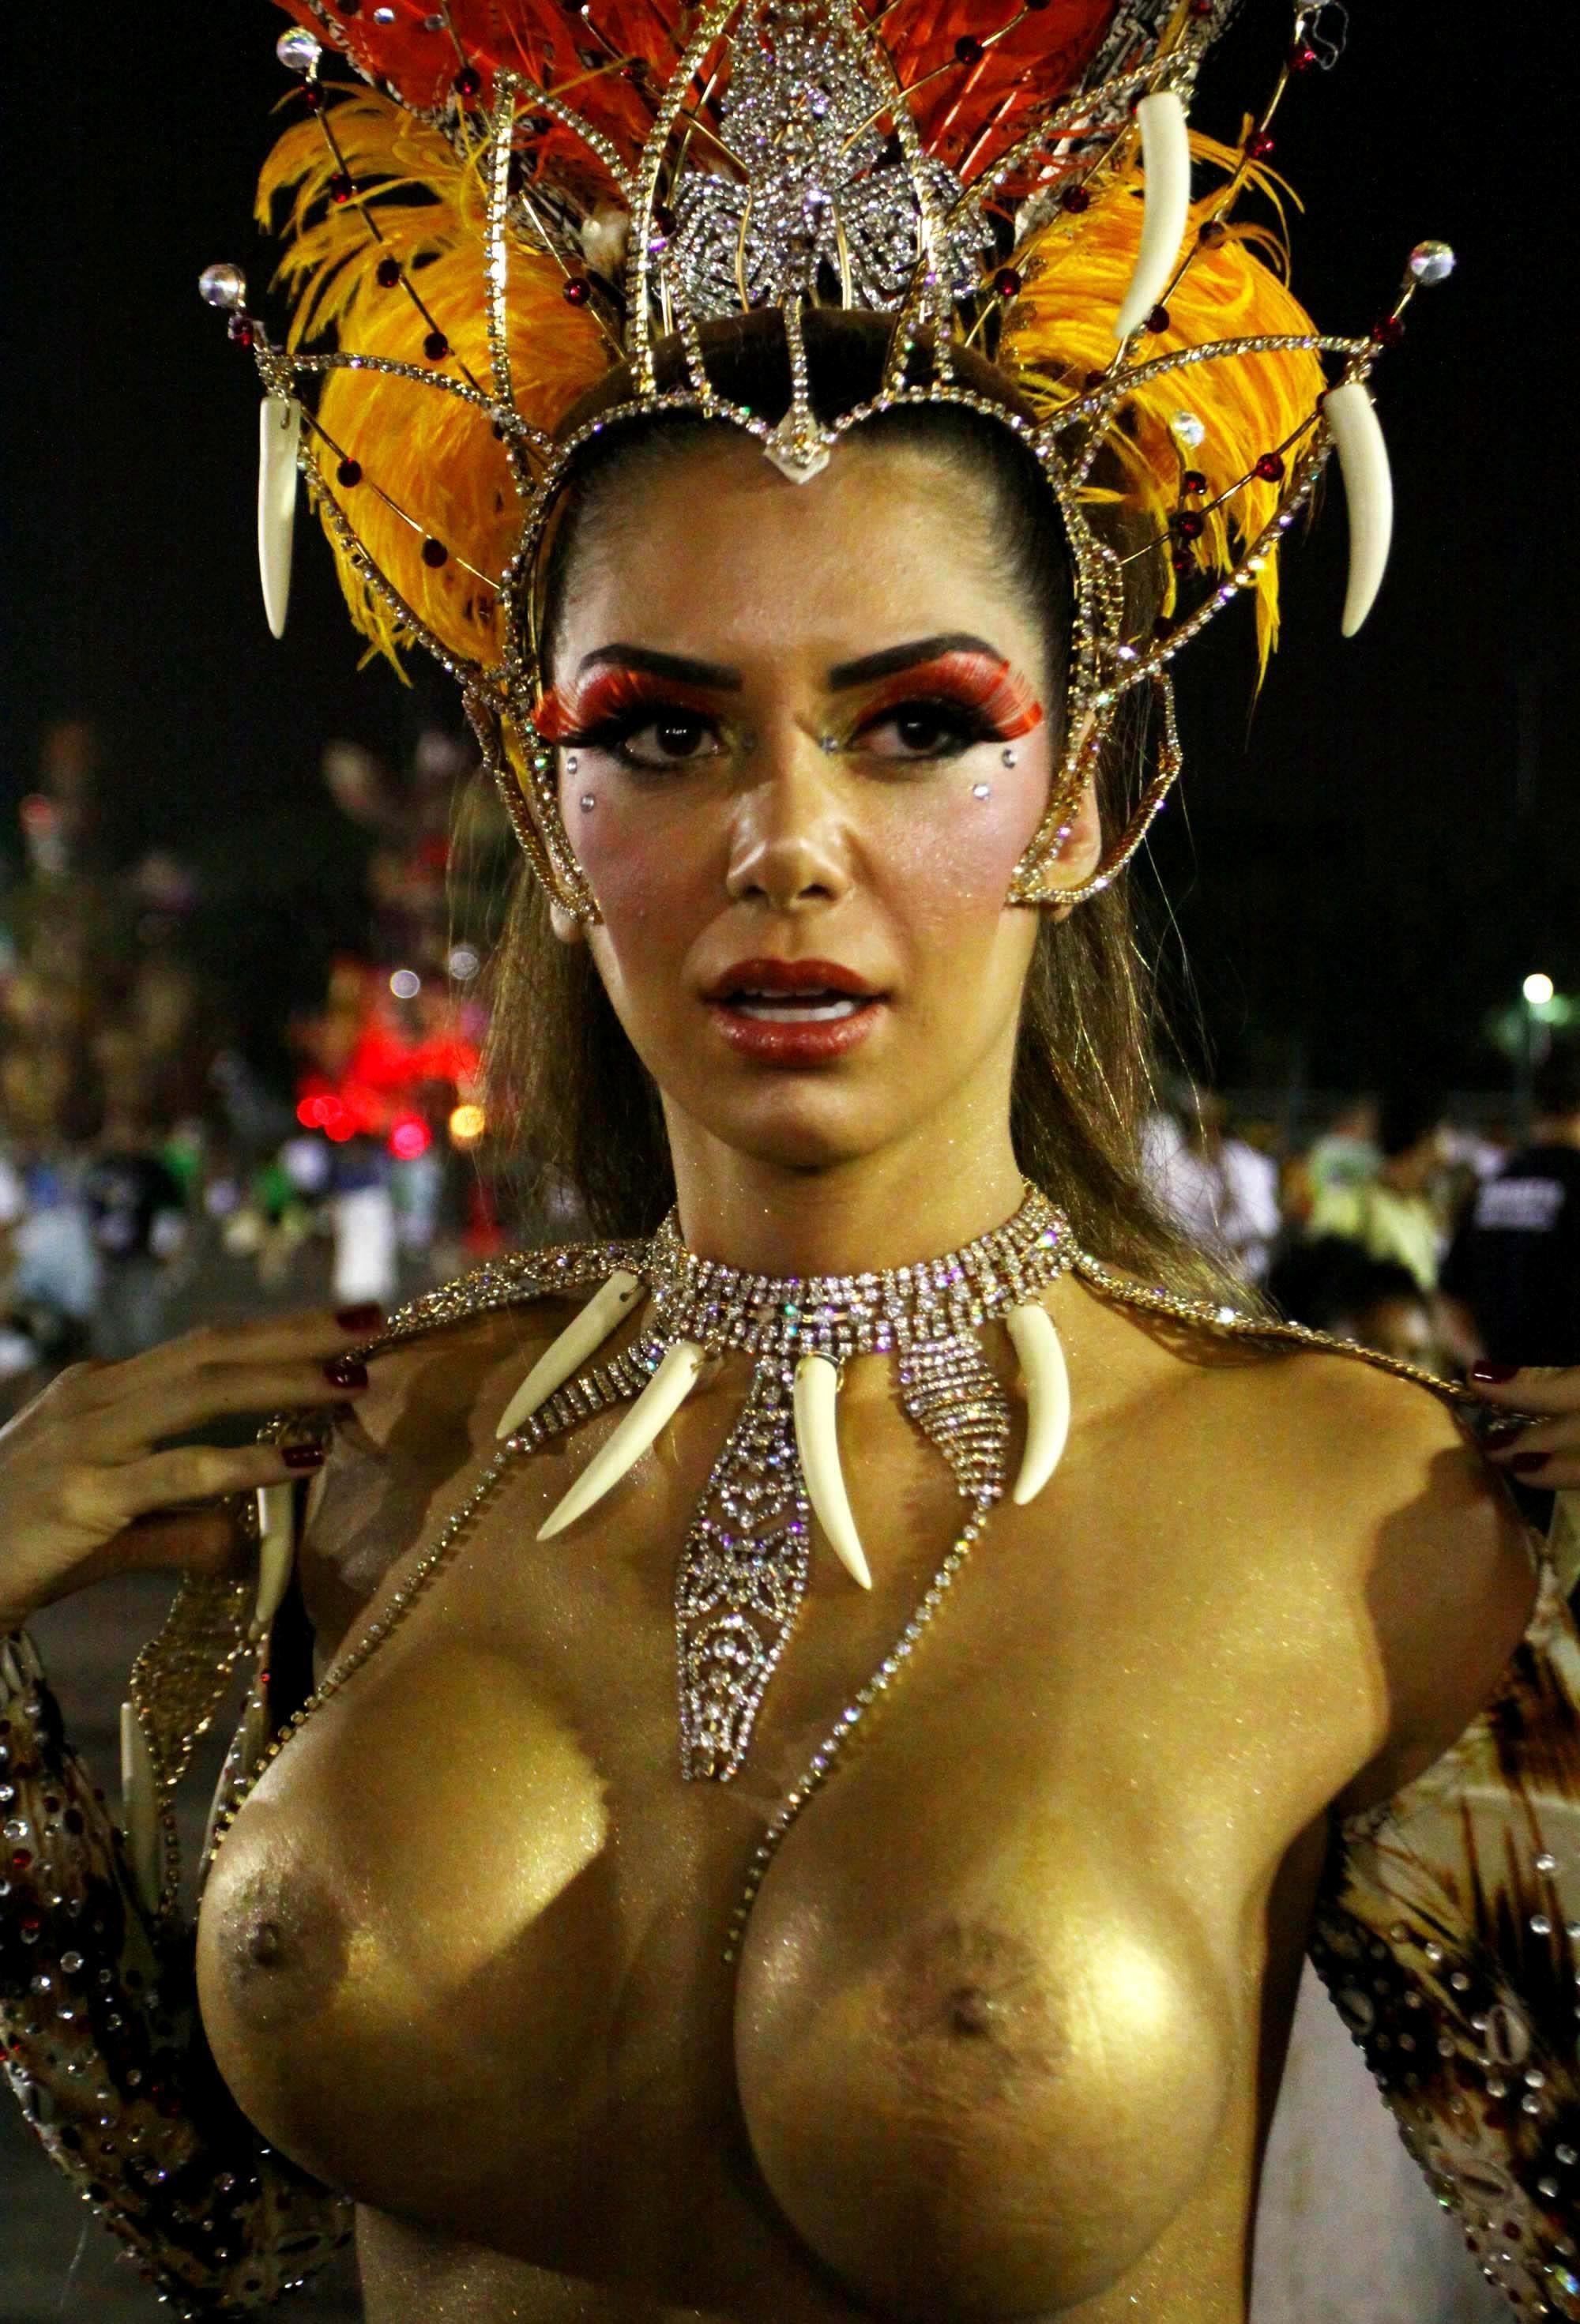 Бразильский карнавал голые девушки (51 фото) - порно рукописныйтекст.рф